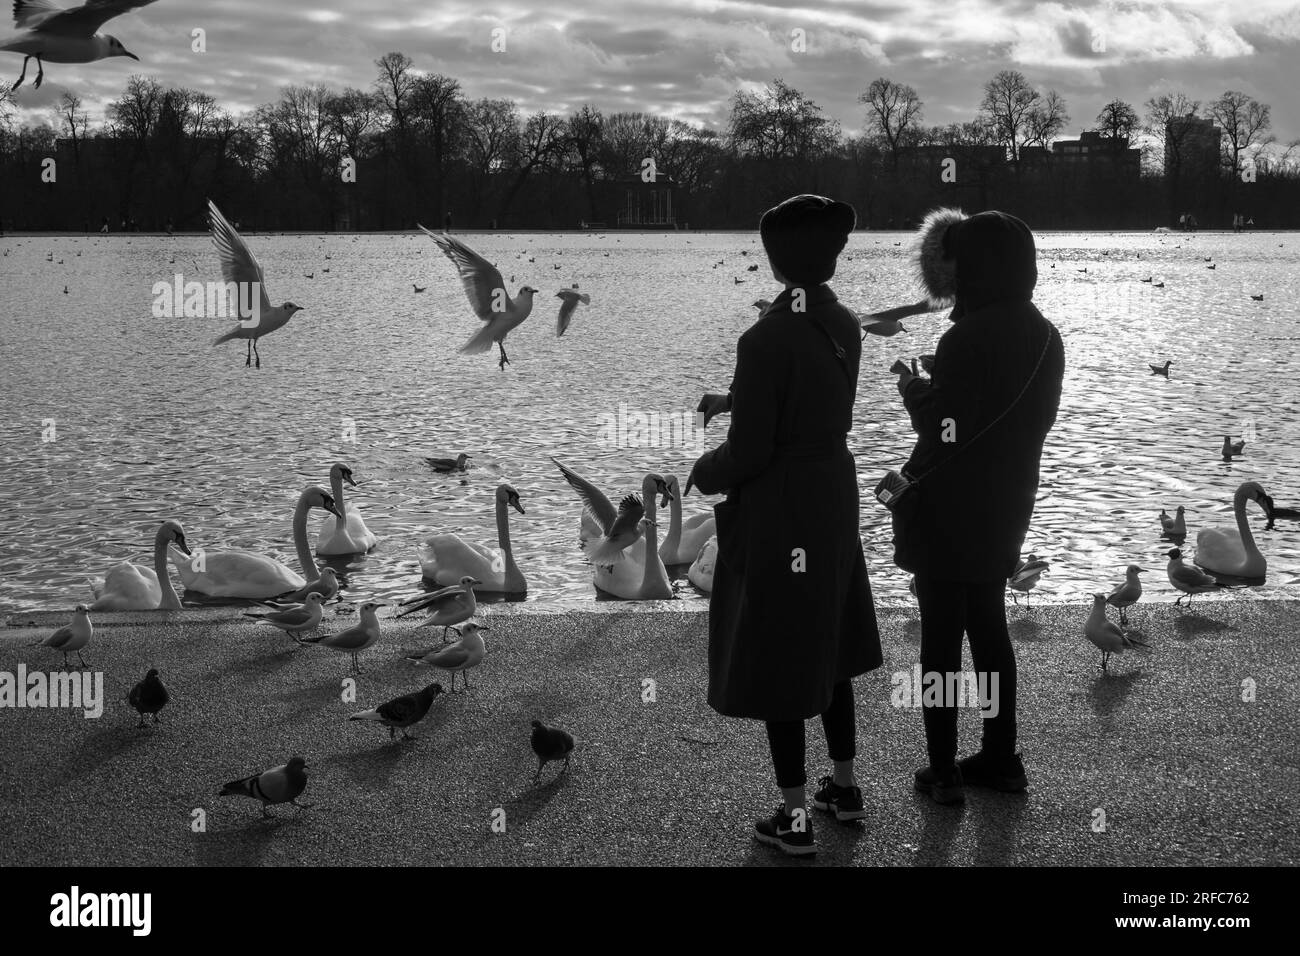 Nourrir des oiseaux et des oiseaux sauvages sur le Round Pond de Kensington Gardens, Londres, Angleterre, Royaume-Uni, Europe Banque D'Images